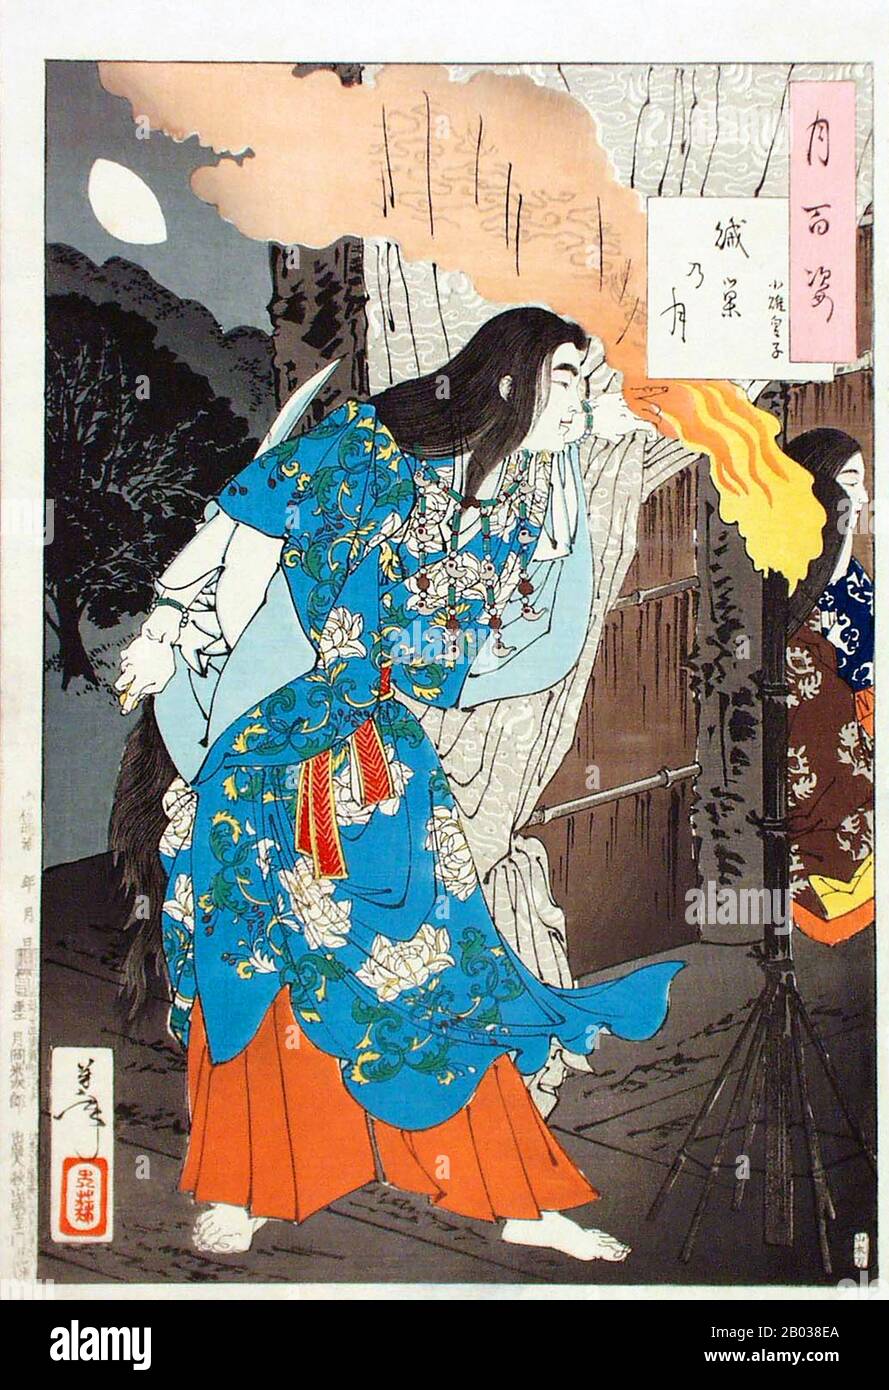 Yamato Takeru (c. 72-113), connu à l'origine sous le nom de Prince Osu, était une figure légendaire et mythique au Japon. Il était prince de la dynastie Yamato, fils du 12ème empereur du Japon, l'empereur Keiko. La vie et la mort de Yamato sont principalement chronicrées dans les contes "Kojiki" (712 ce) et "Nihon Shoki" (720 ce). Pour avoir claquant son frère aîné, Osu a été envoyé à la lutte dans la province d'Izumo par son père, qui craignait son tempérament brutal. Au lieu d'être tué cependant, Osu a réussi à vaincre ses ennemis et a été doué le titre 'Yamato Takeru' (la brave de Yamato). Son père n'était pas convaincu, encore peur Banque D'Images